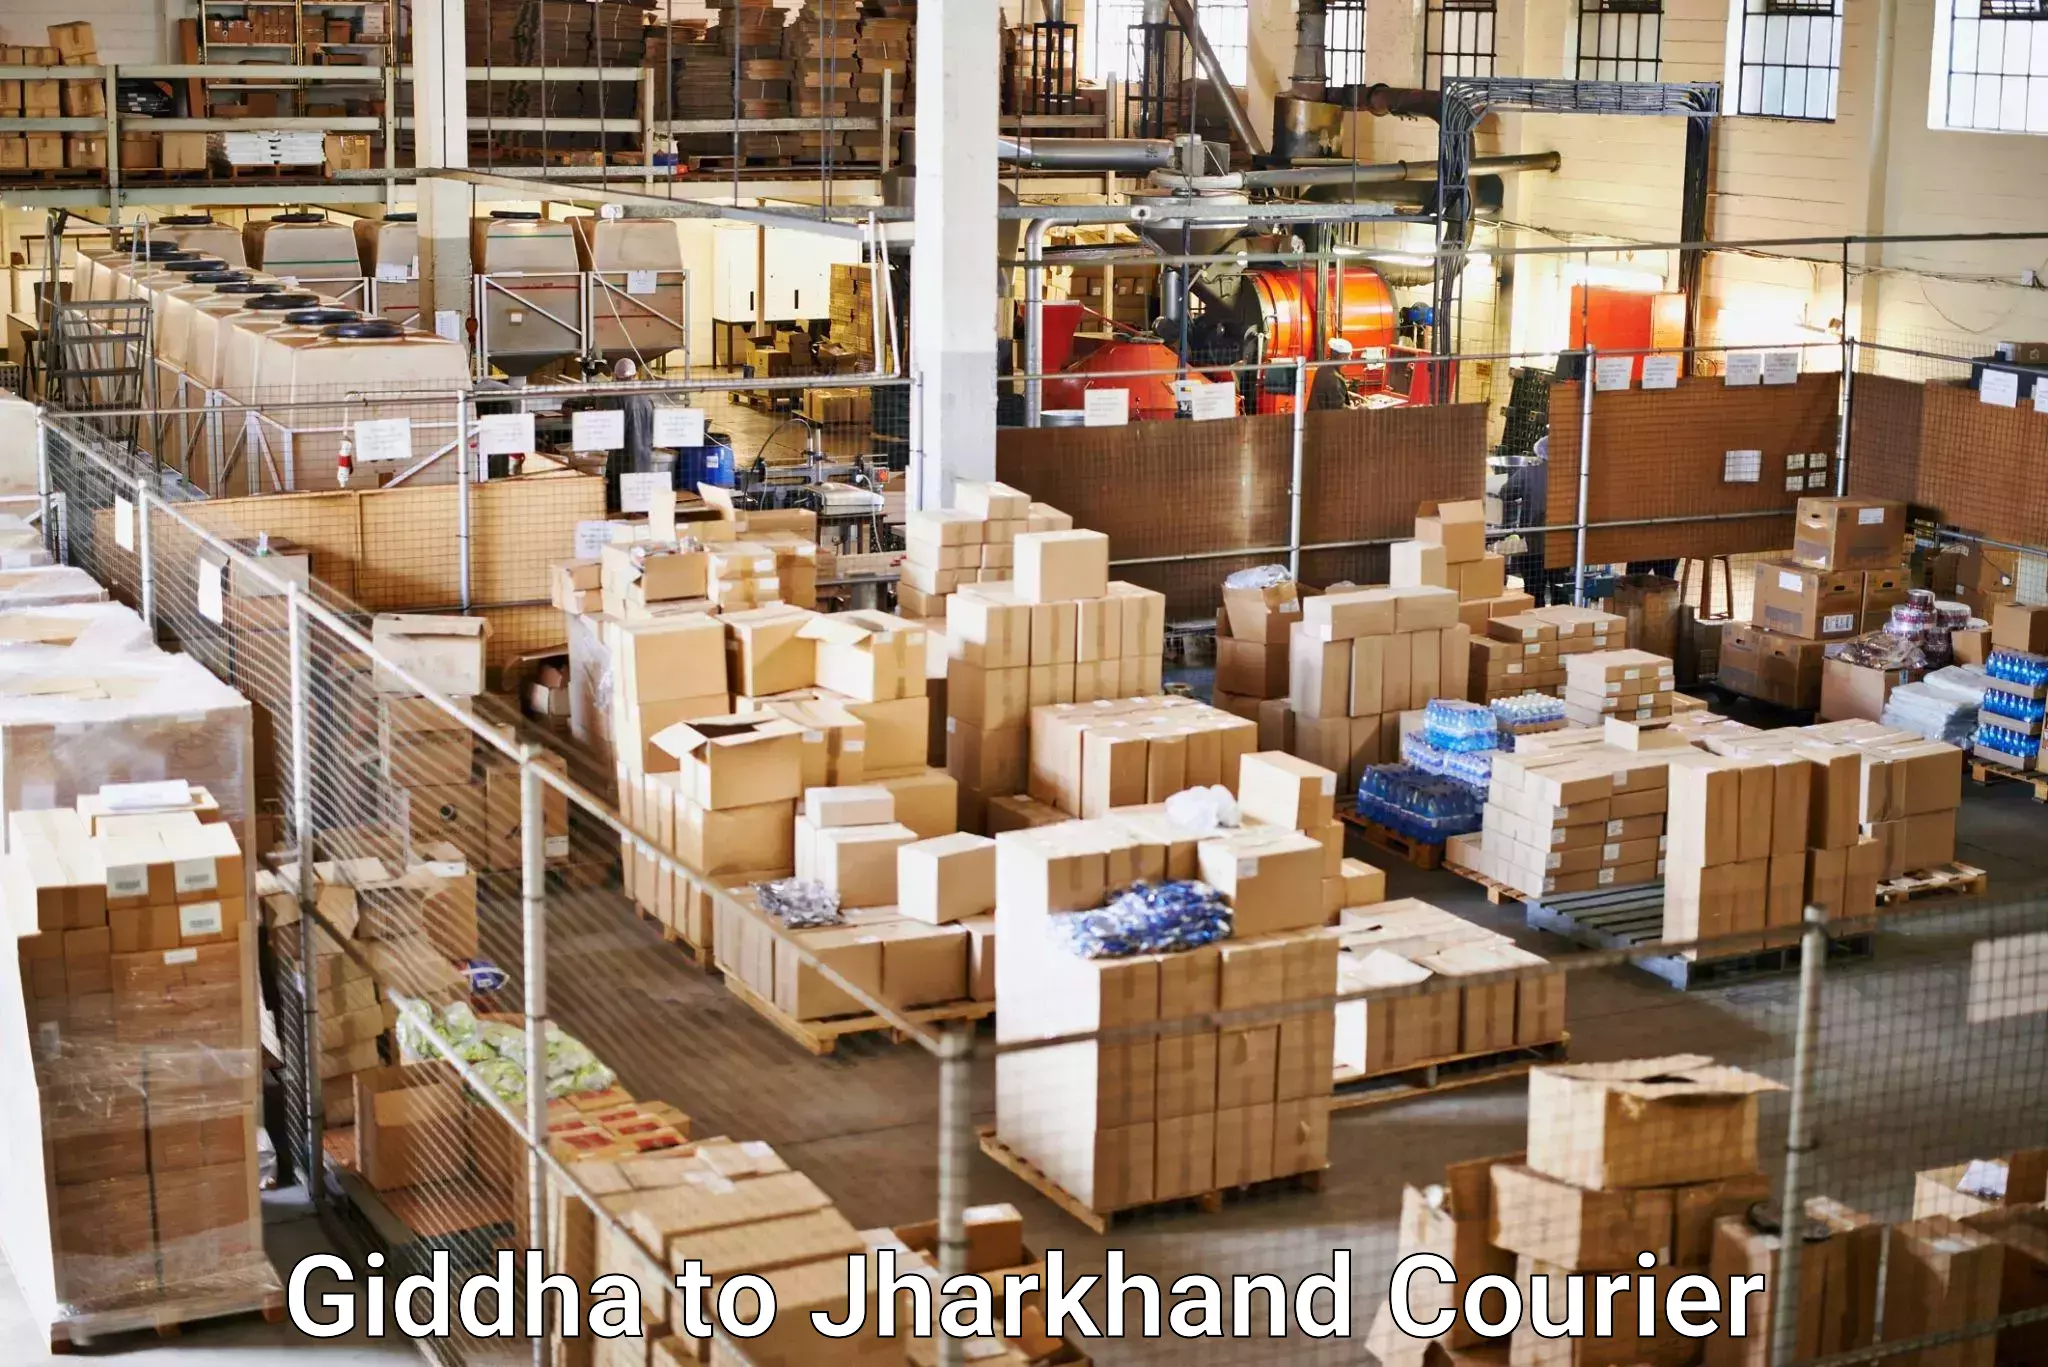 Logistics service provider Giddha to Boarijore